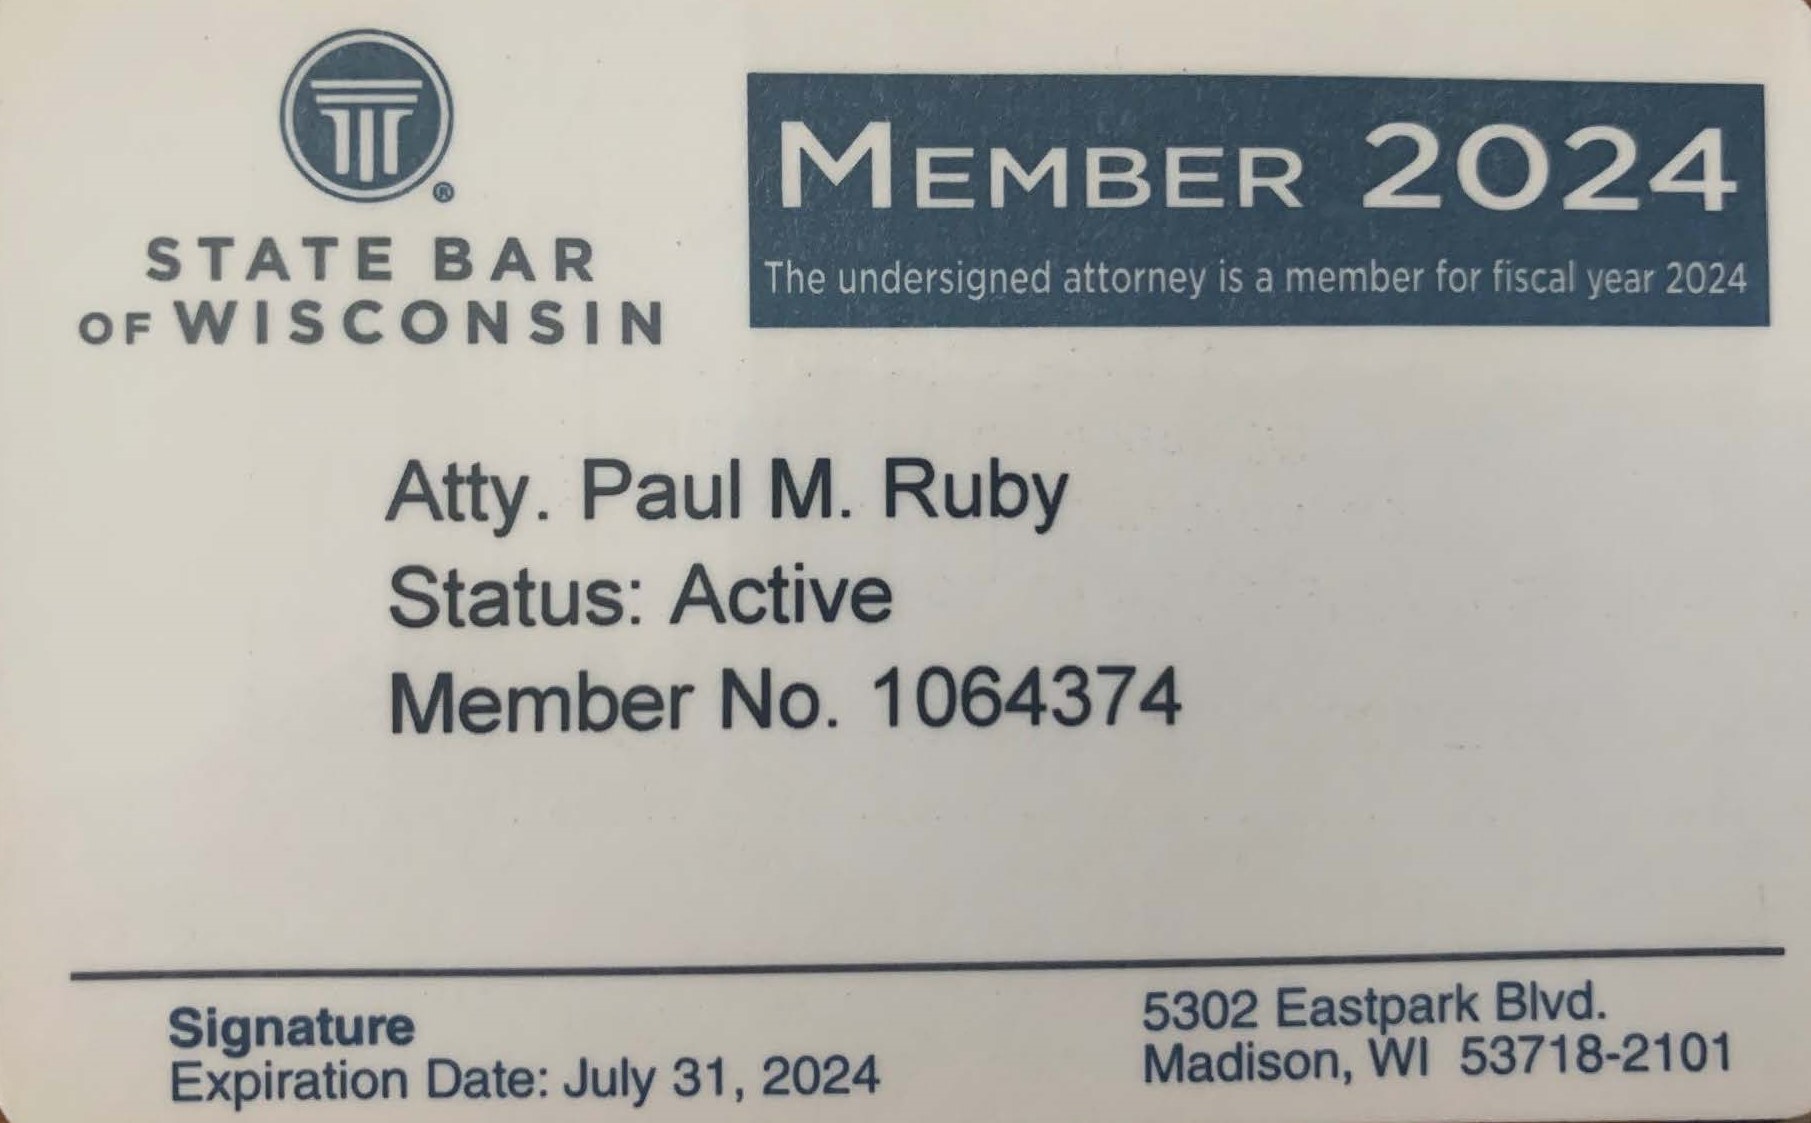 State Bar Association